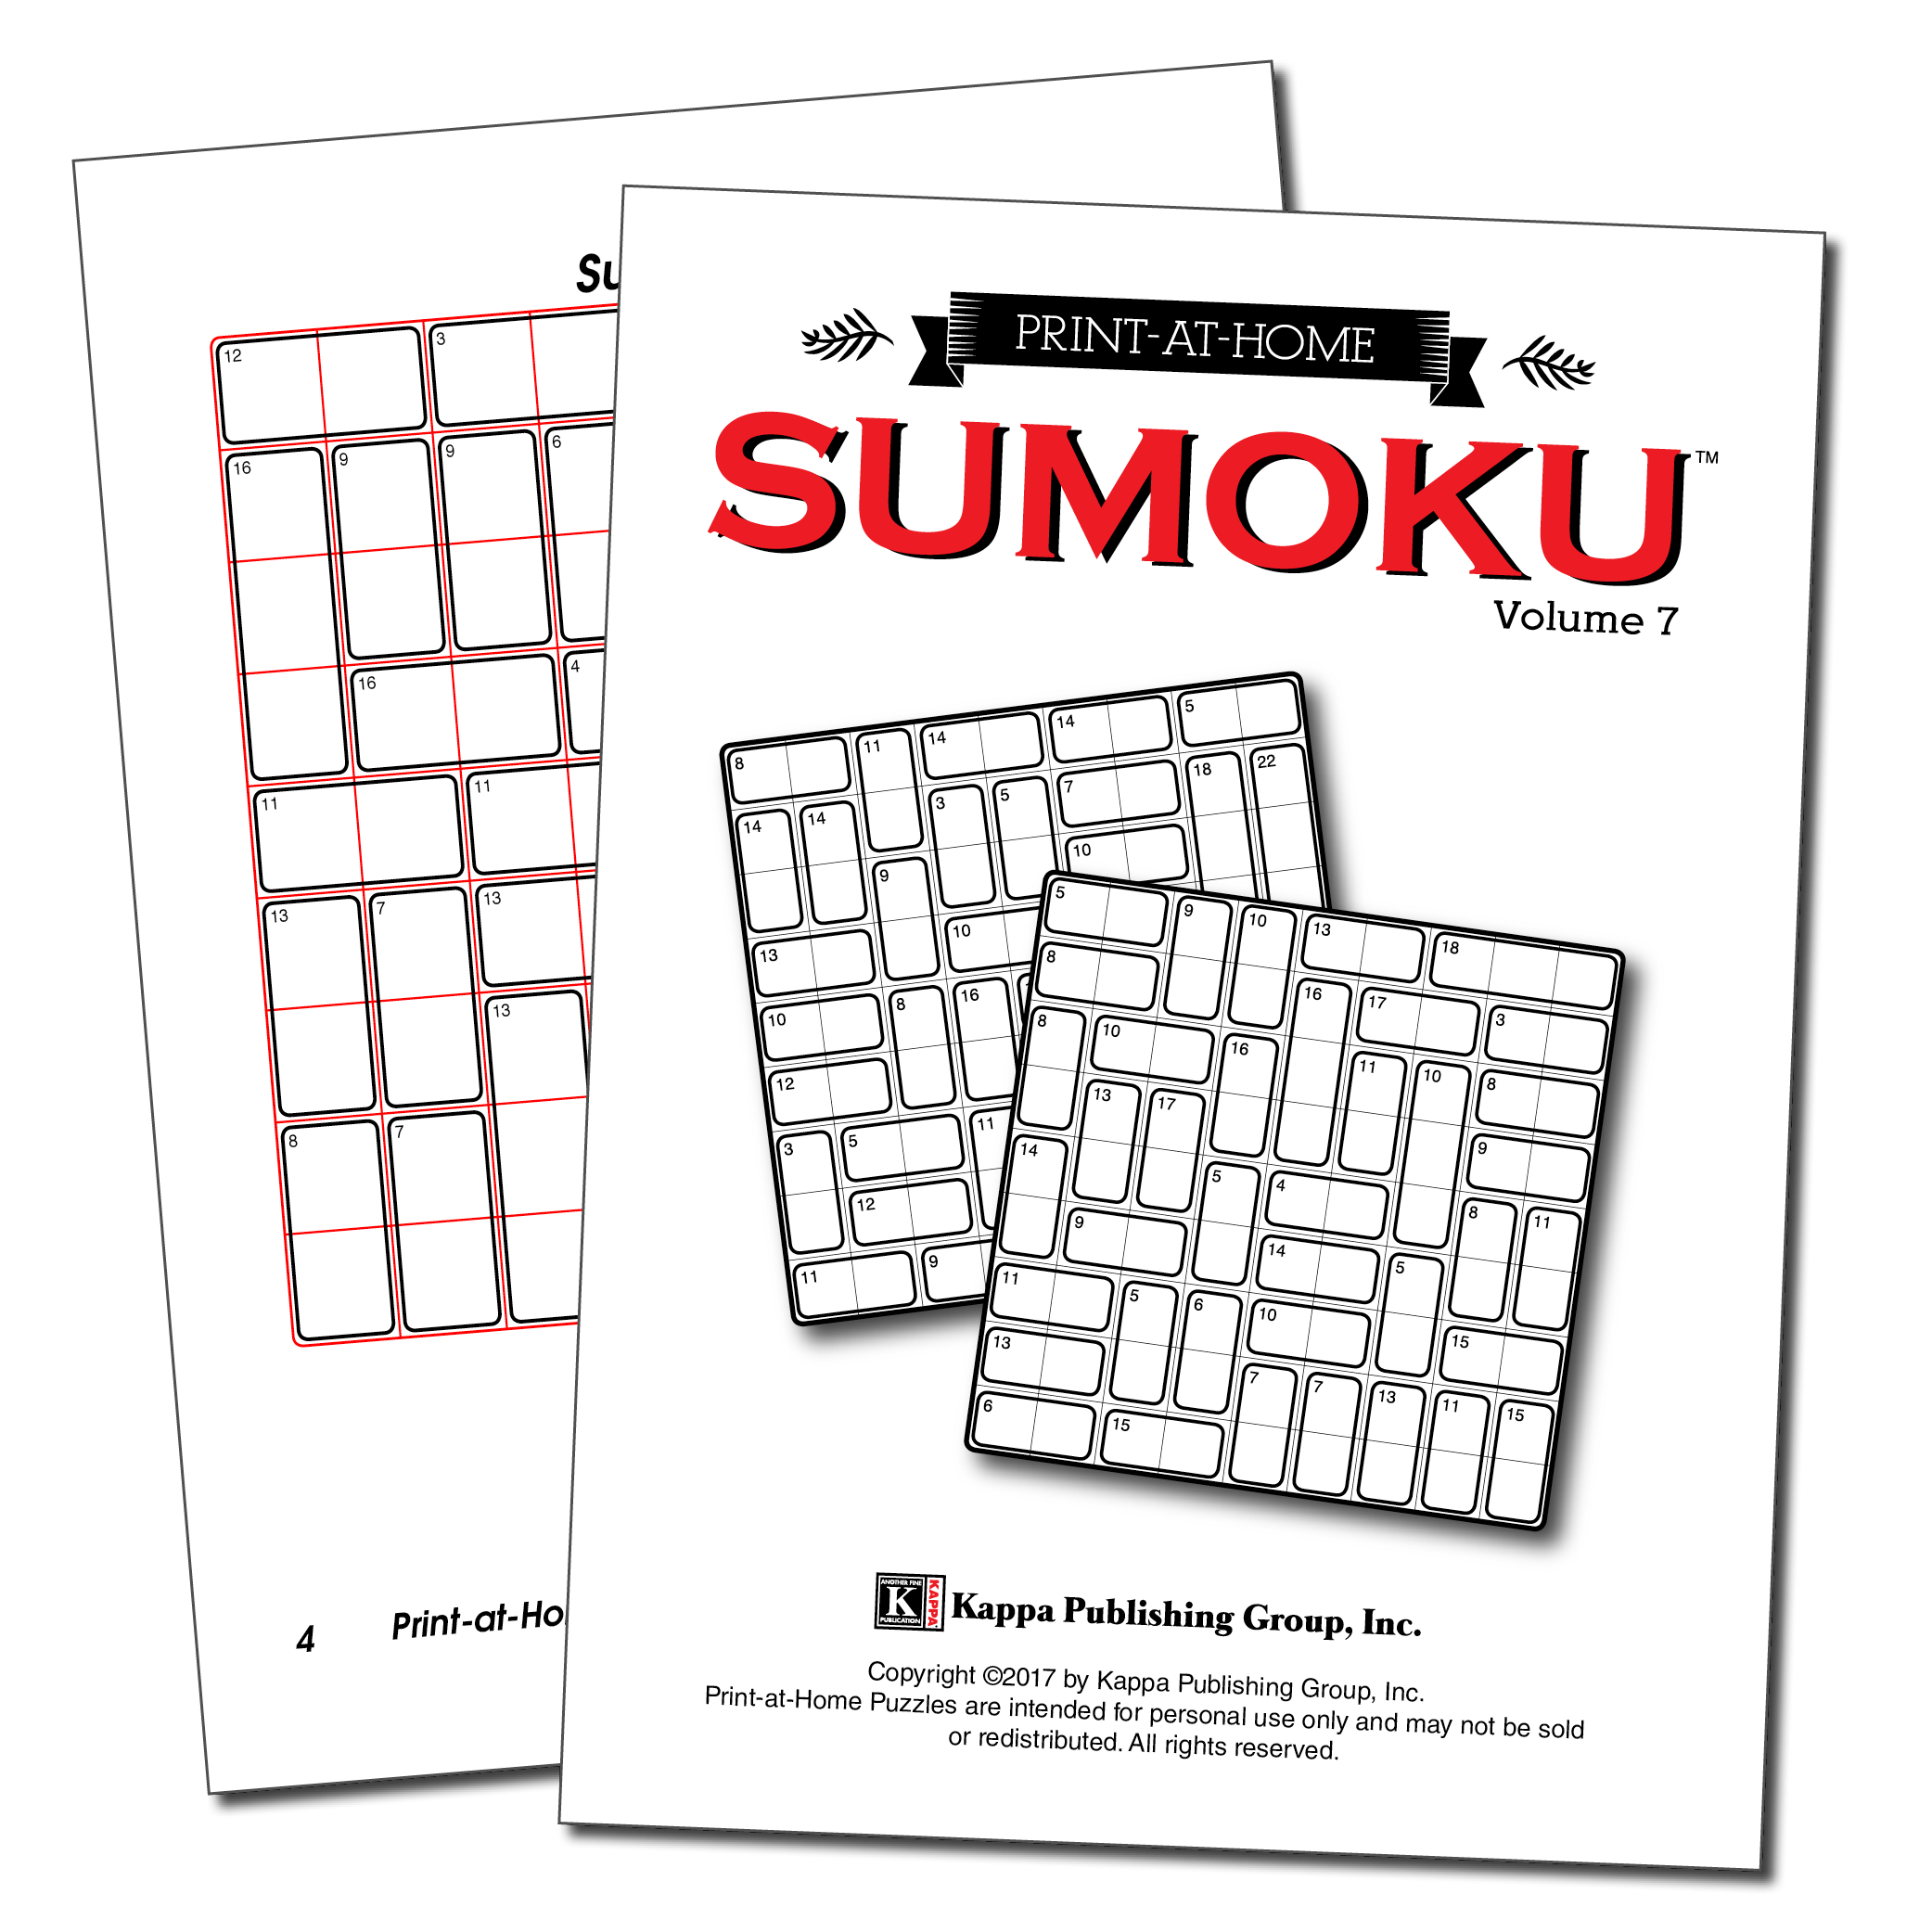 Print-at-Home Sumoku – Kappa Puzzles